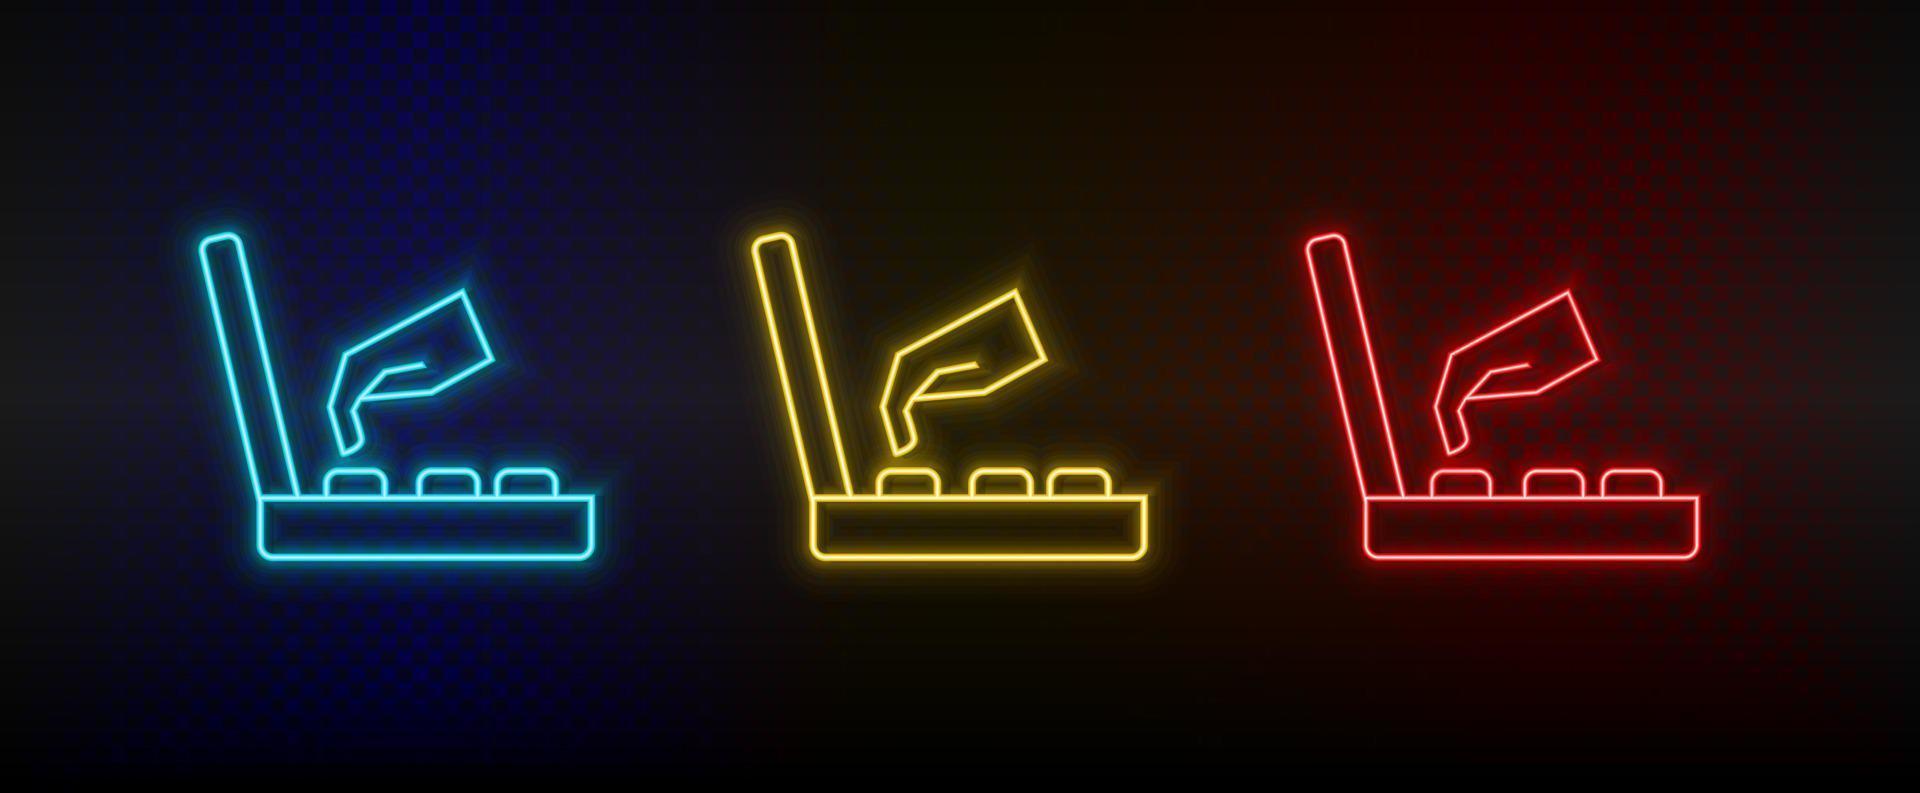 icônes au néon. main d'arcade de console de jeu rétro. ensemble d'icônes vectorielles néon rouge, bleu, jaune sur fond sombre vecteur